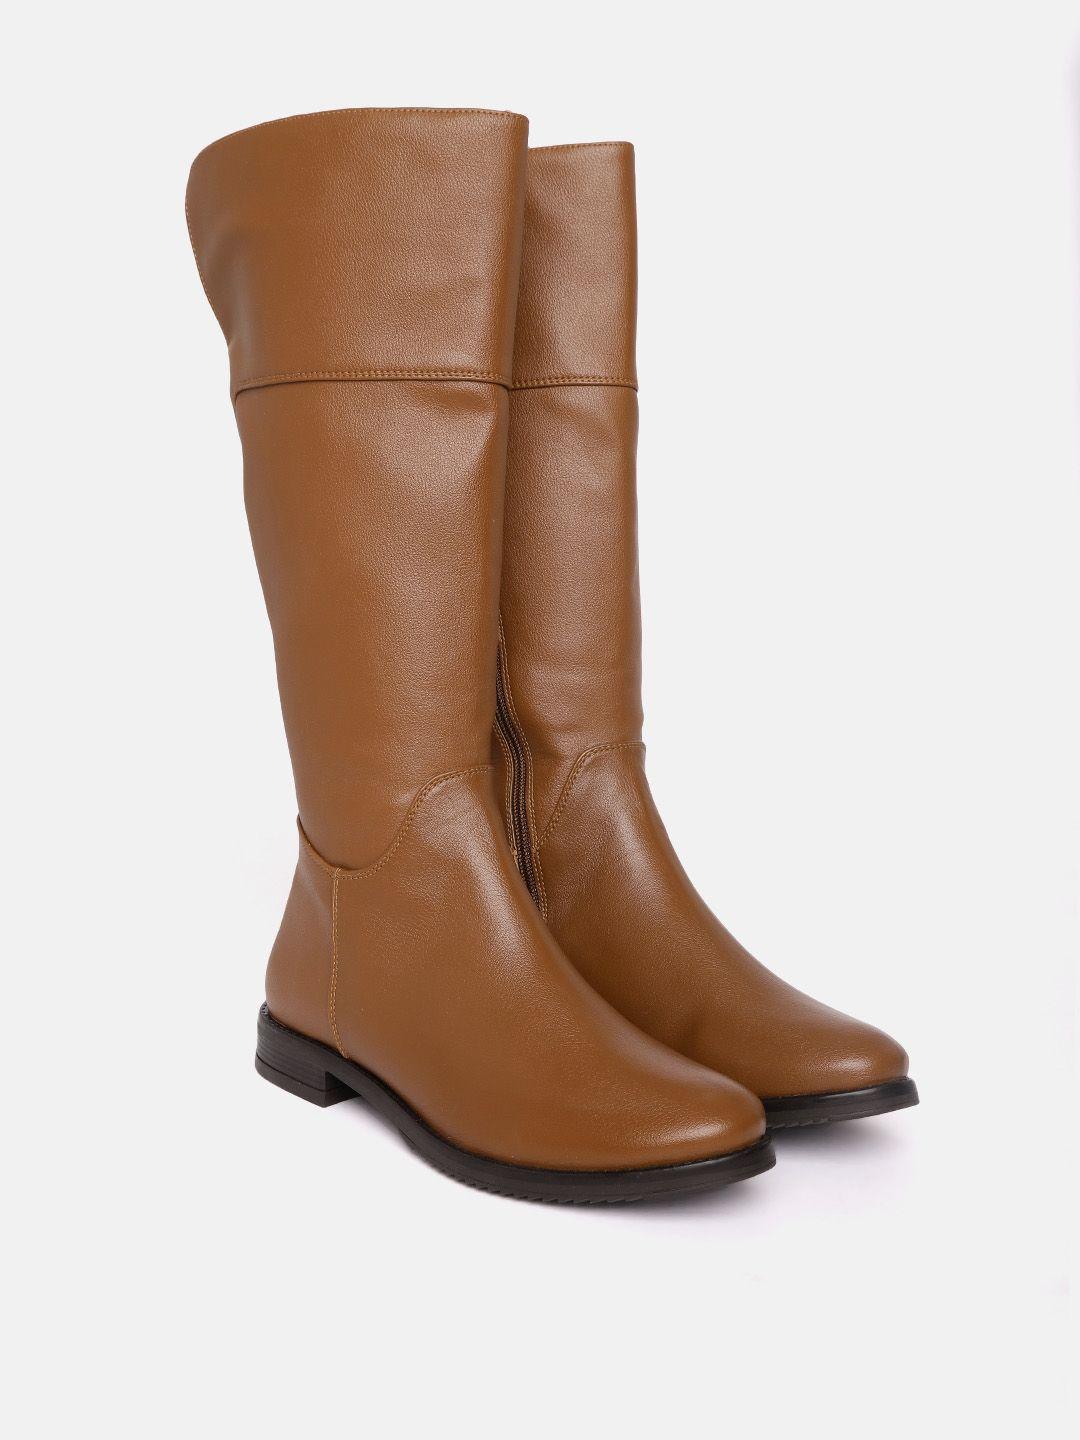 corsica women high-top boots